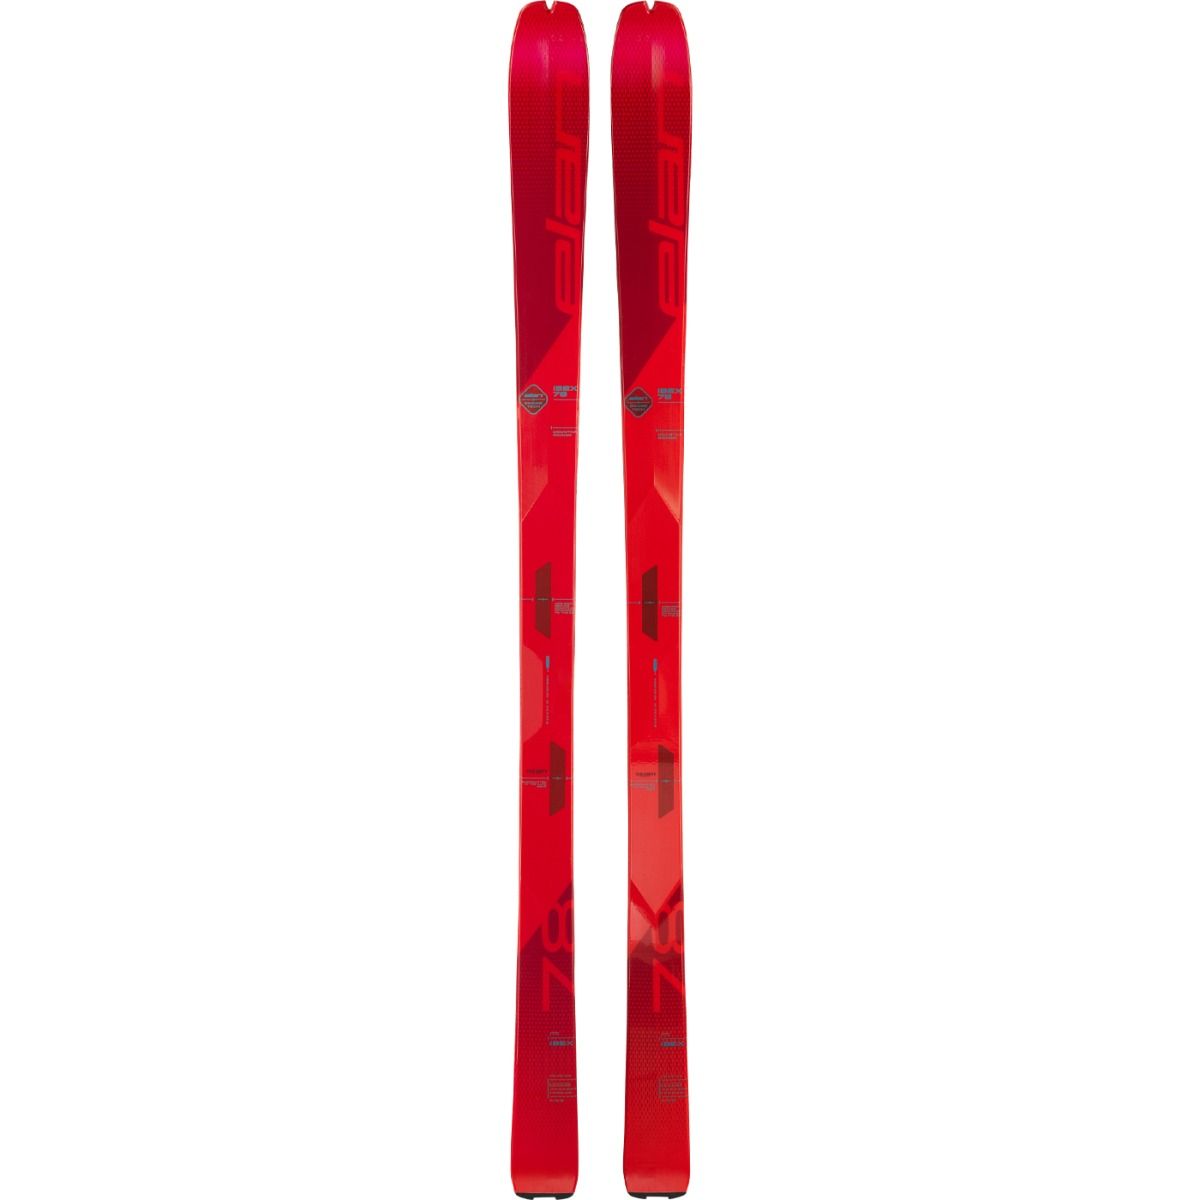 Elan Ibex 78 Touring Skis - 2022 SKIS Elan 170cm  